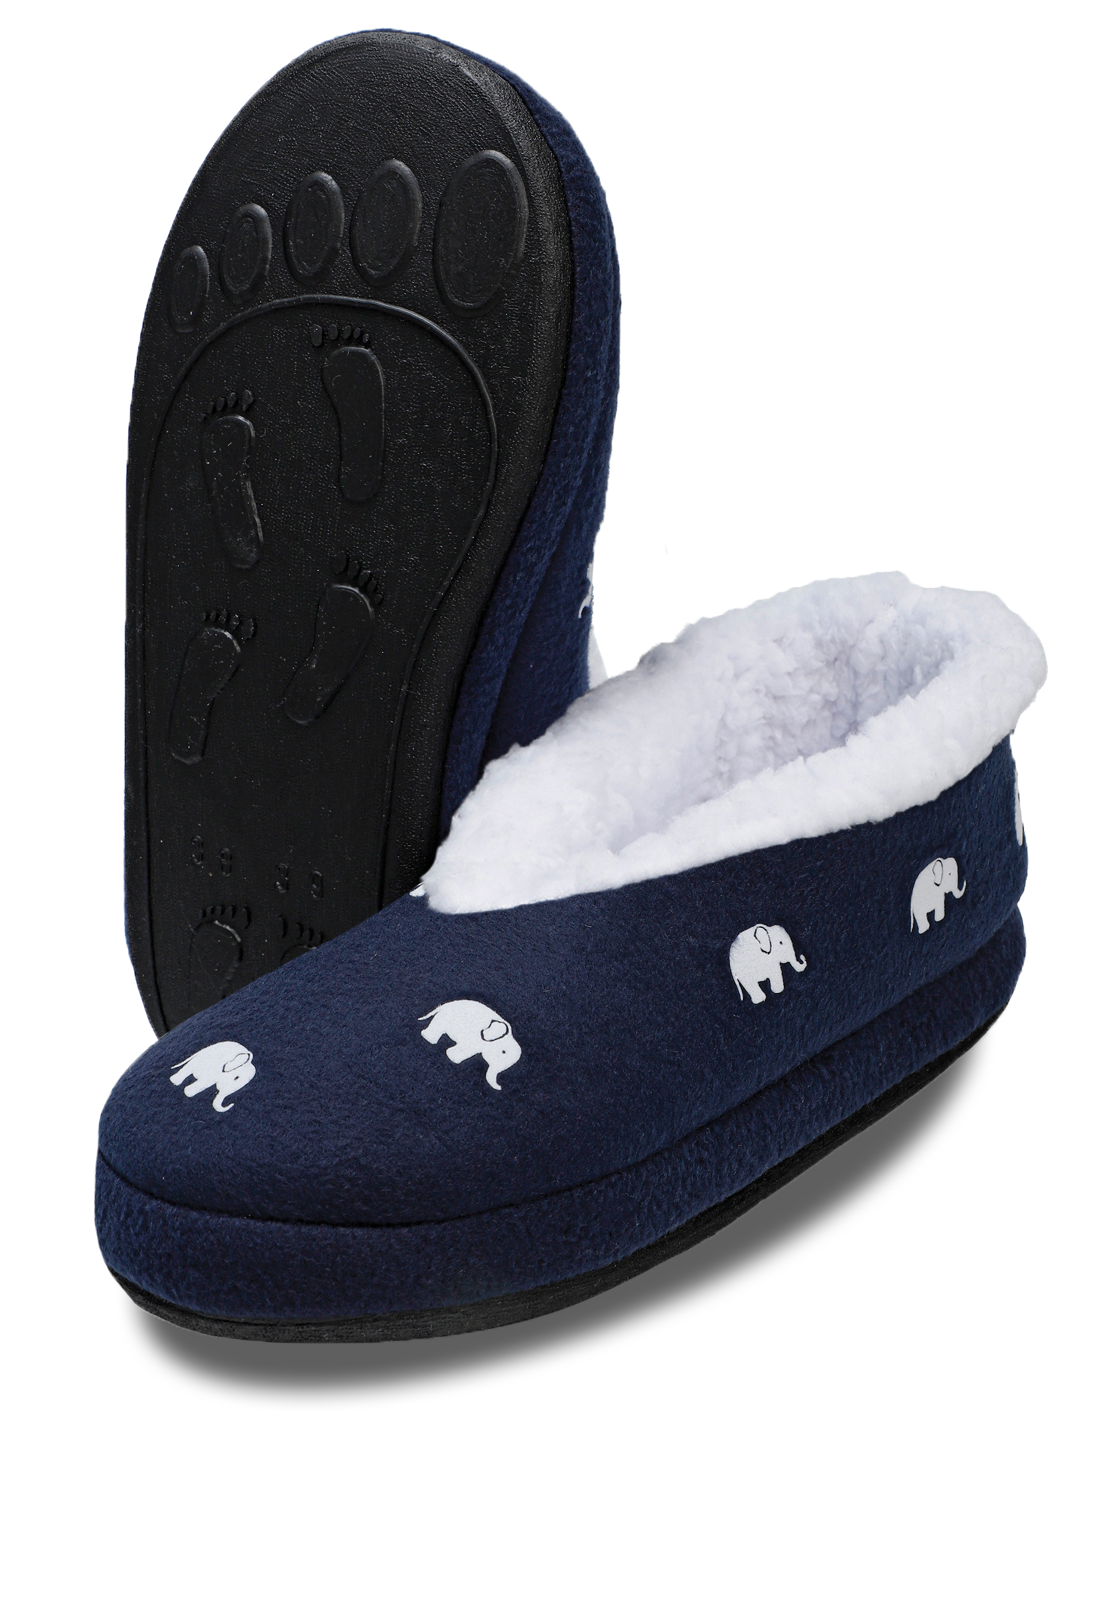 lindas pantuflas azules con elefantes, suela de caucho y suave peluche en su interior